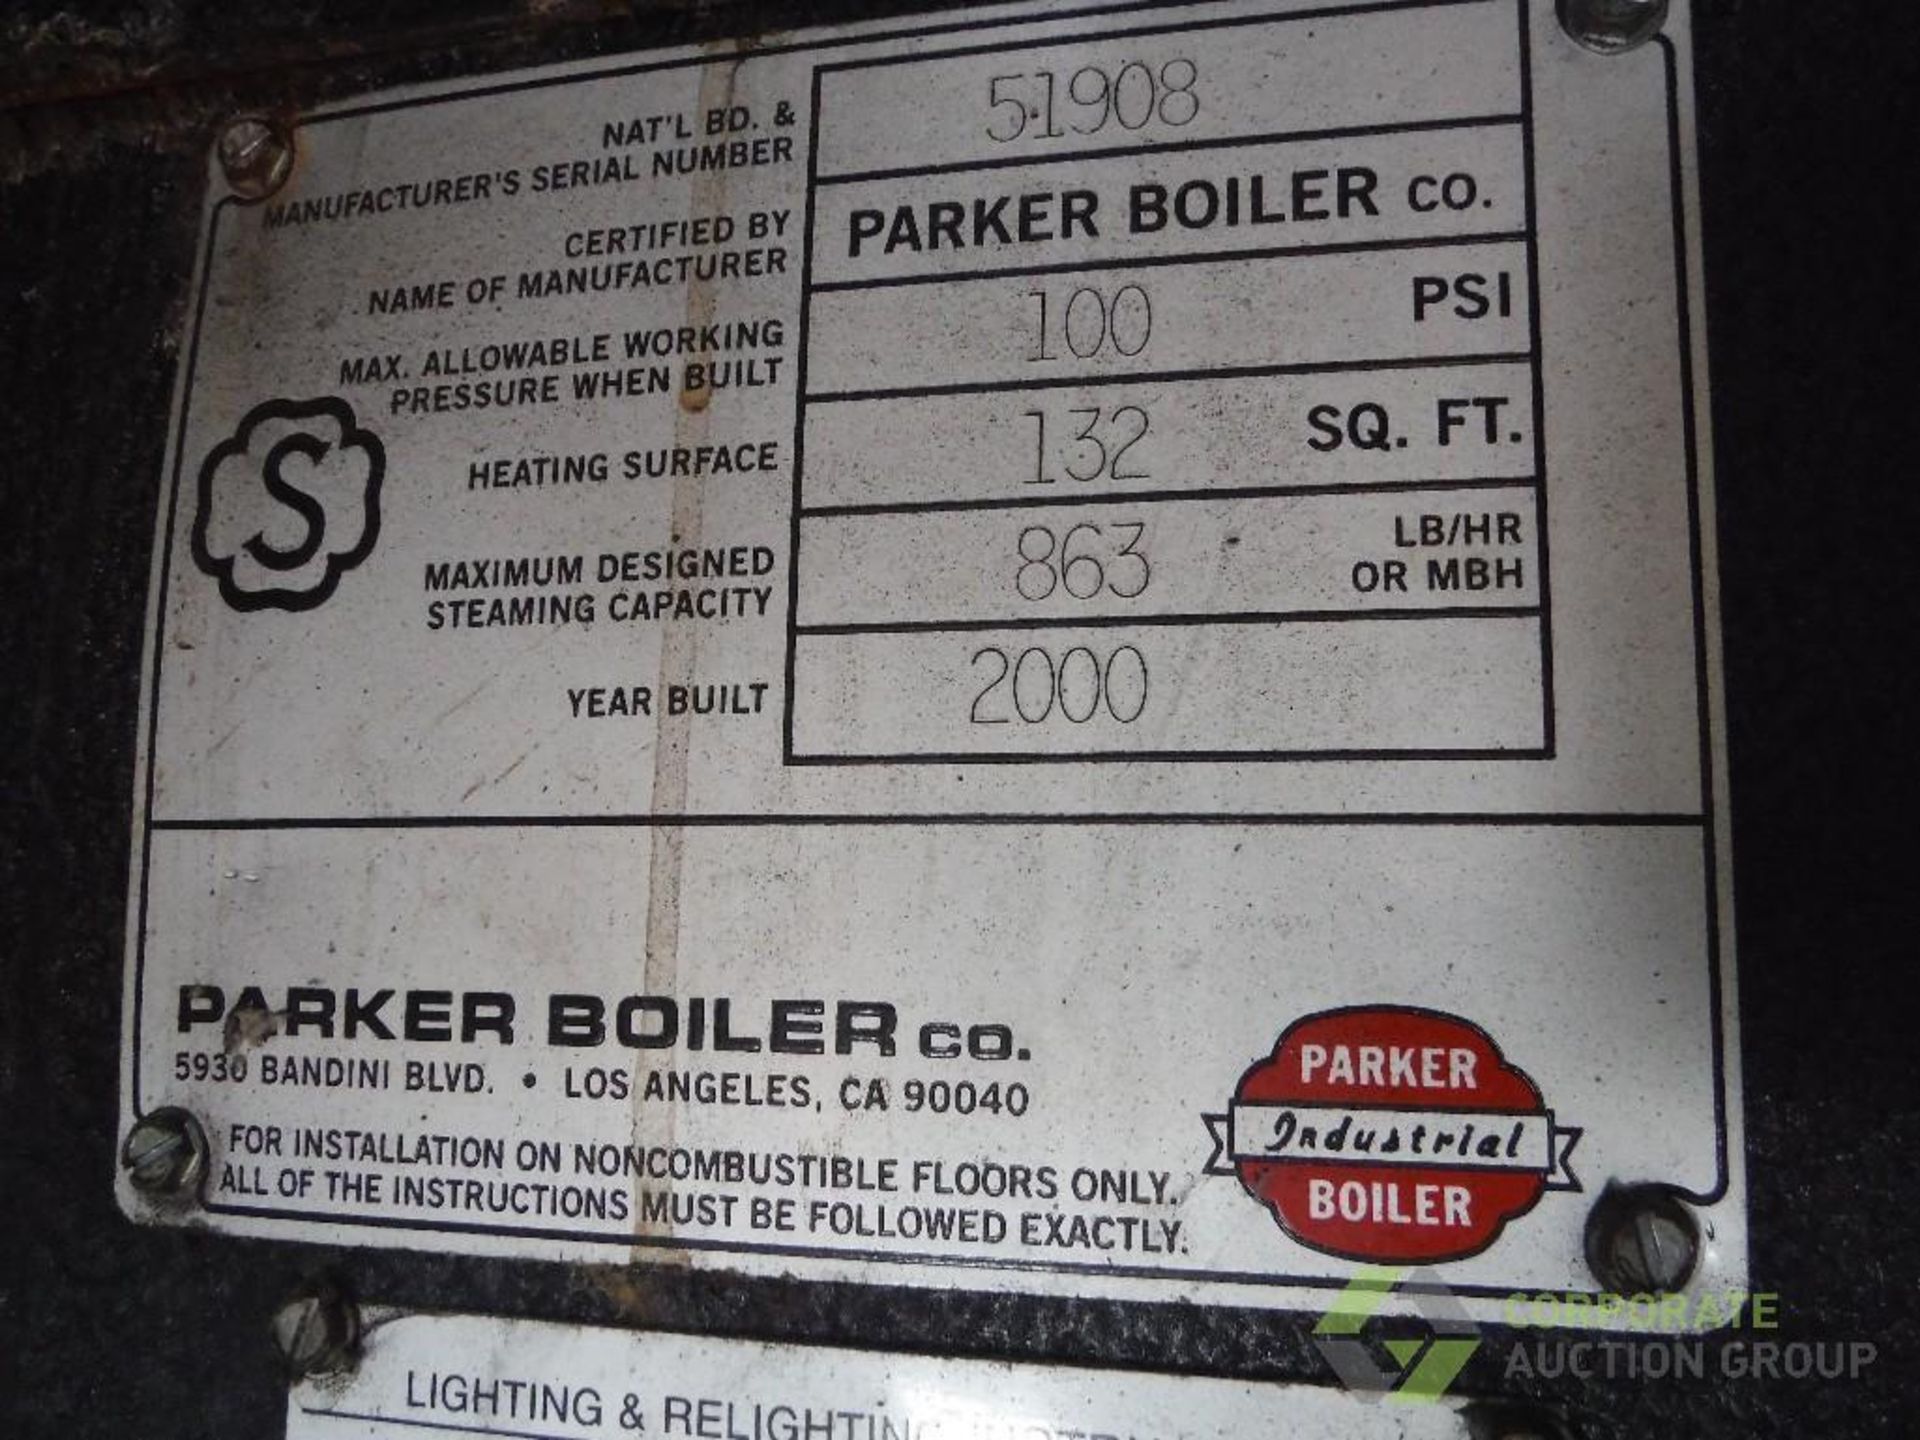 2000 Parker 25 hp steam boiler, Model 25L, SN 51908 natural gas, 1,075,000 max btu/hr., 863 lb./ - Image 4 of 8